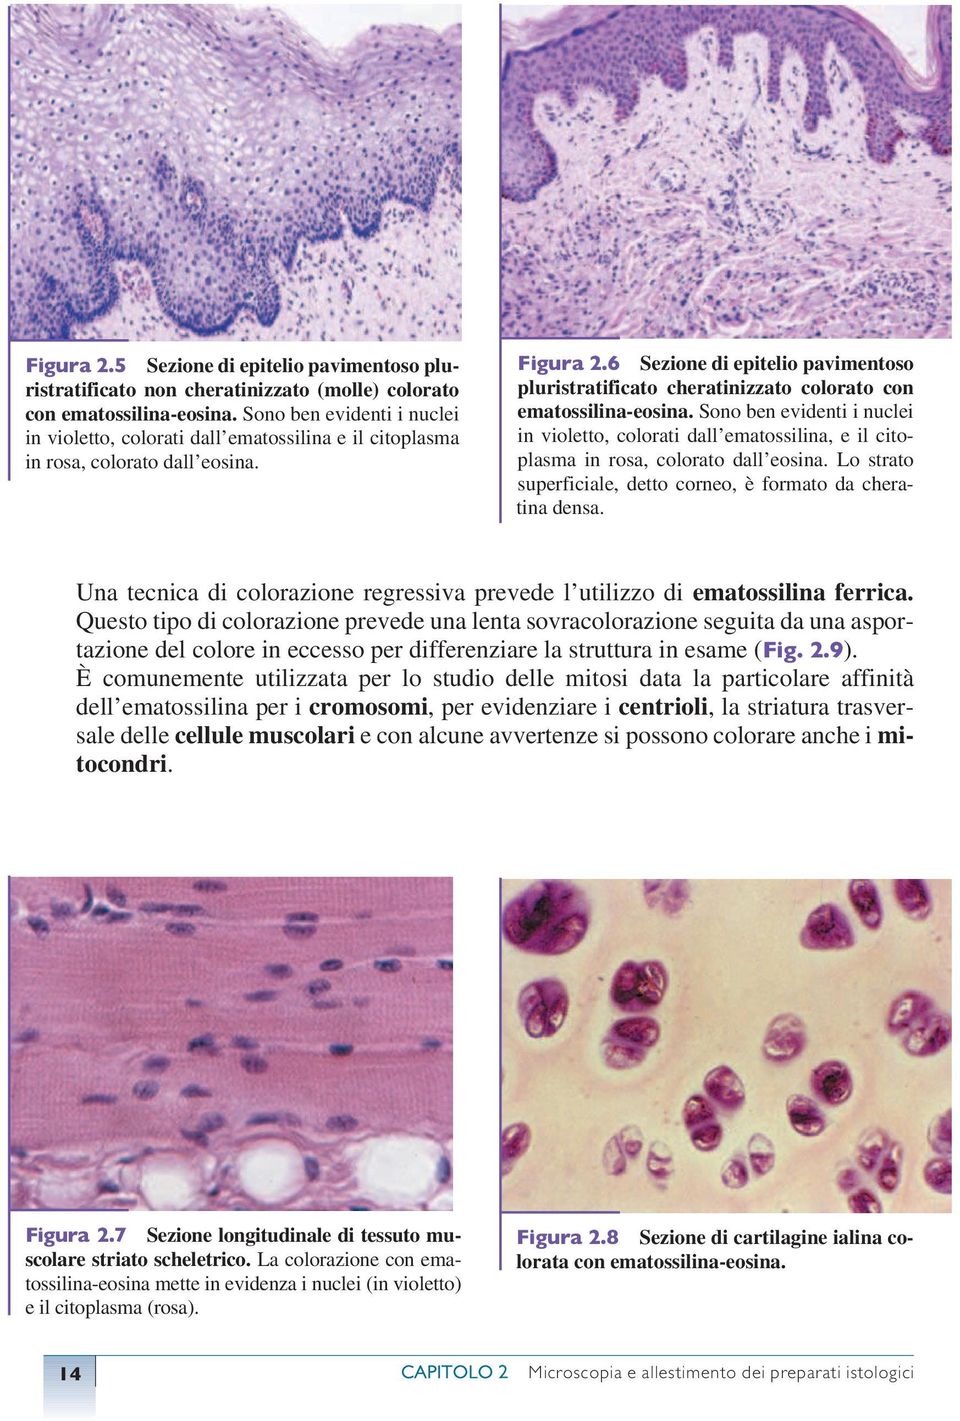 6 Sezione di epitelio pavimentoso pluristratificato cheratinizzato colorato con ematossilina-eosina.